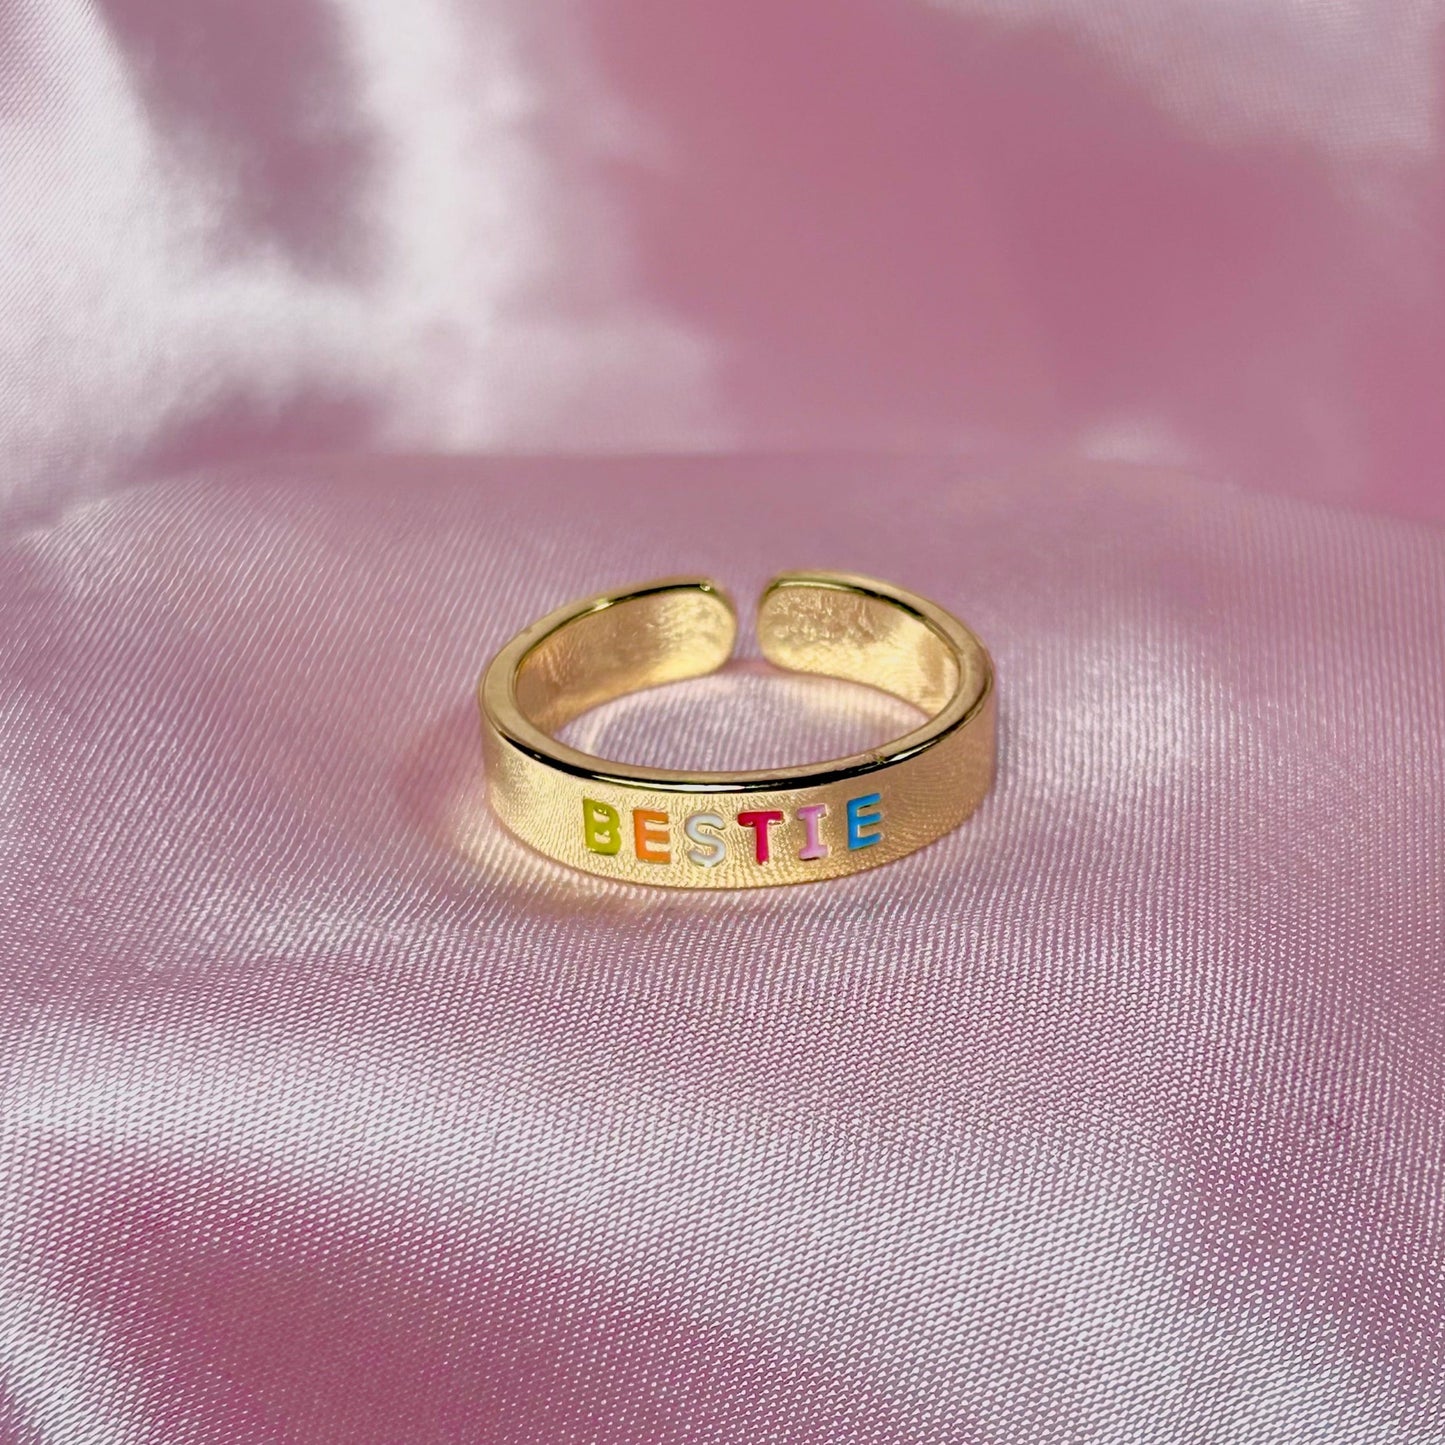 "Bestie" Friendship Ring